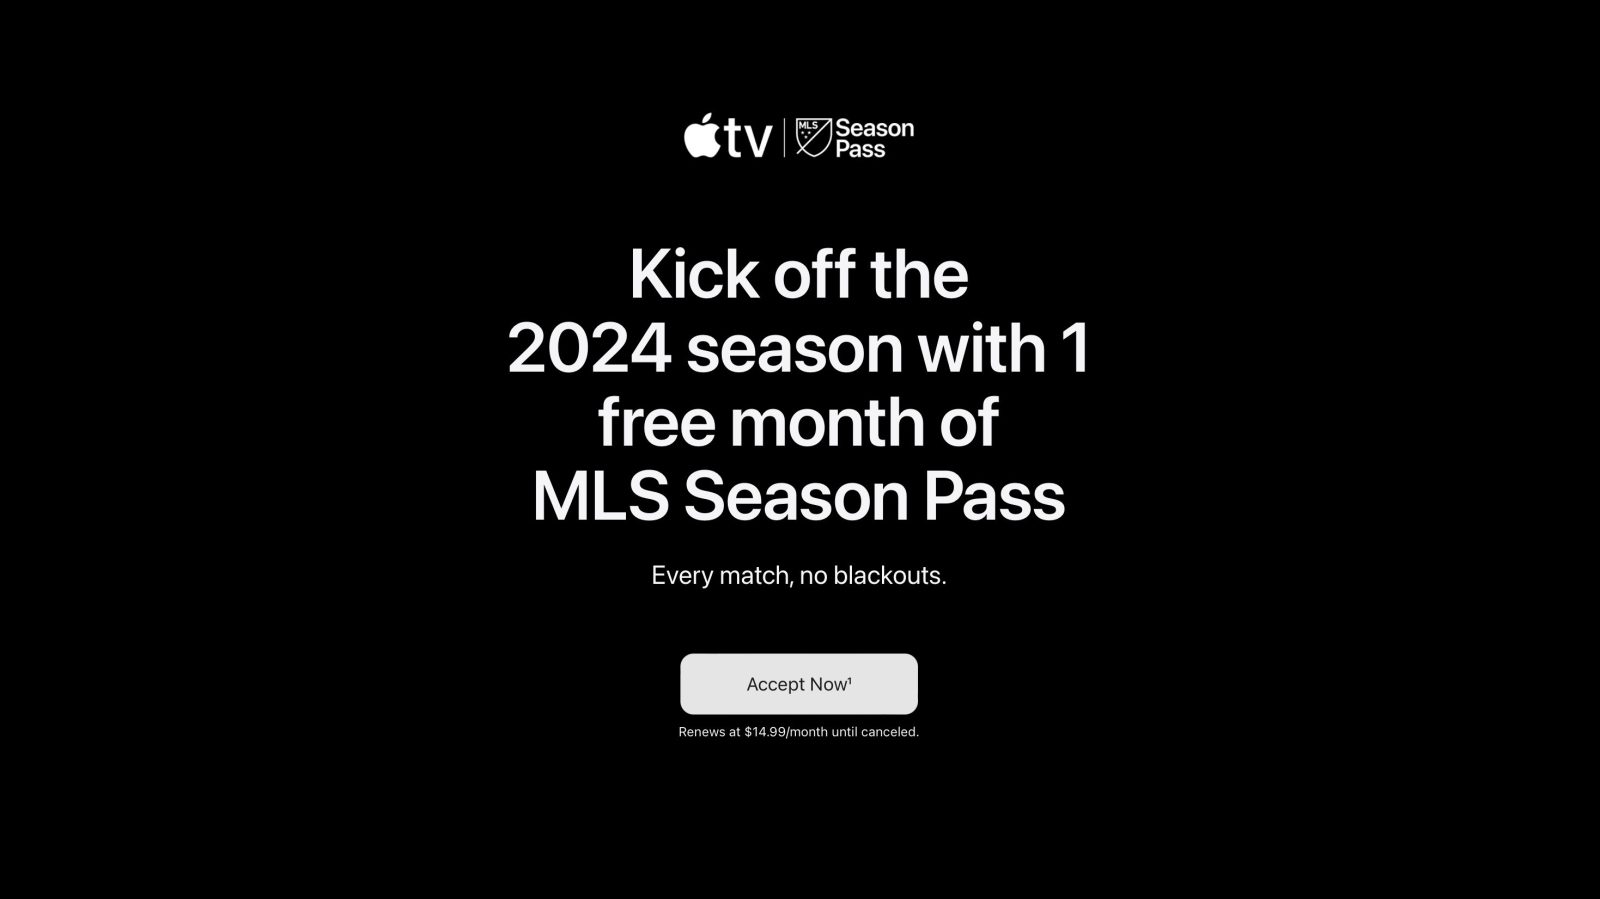 Apple предлагает некоторым пользователям один бесплатный месяц MLS Season Pass